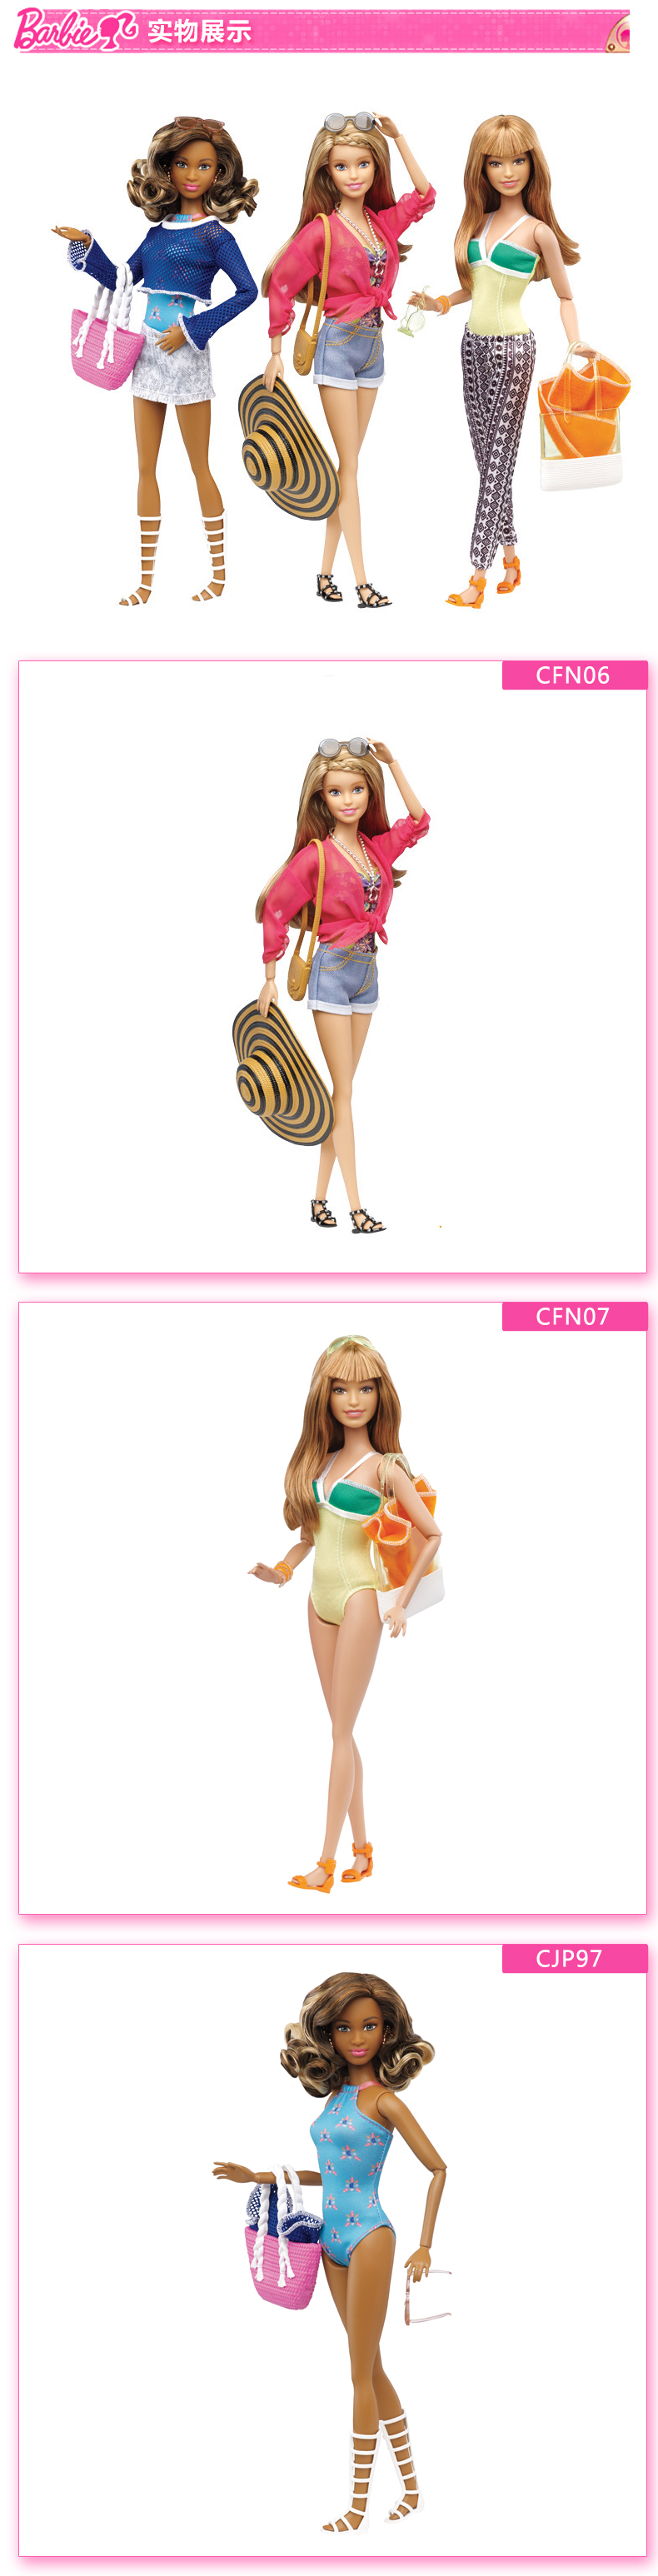 芭比CFN05/CJP97芭比度假套装多款娃娃女孩生日礼物玩具